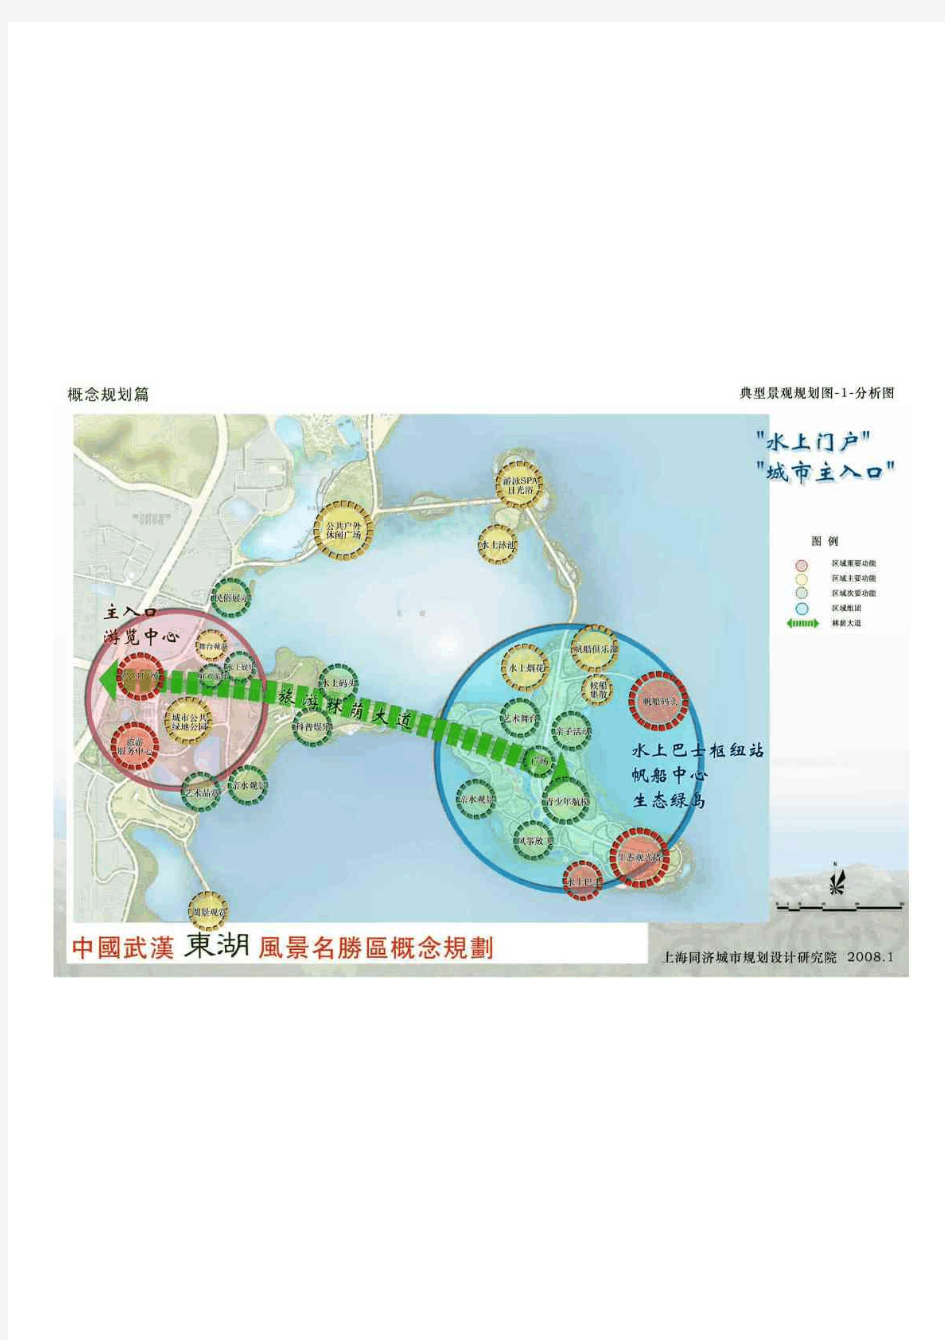 武汉东湖风景名胜区概念规划200845典型景观规划图-1-分析图